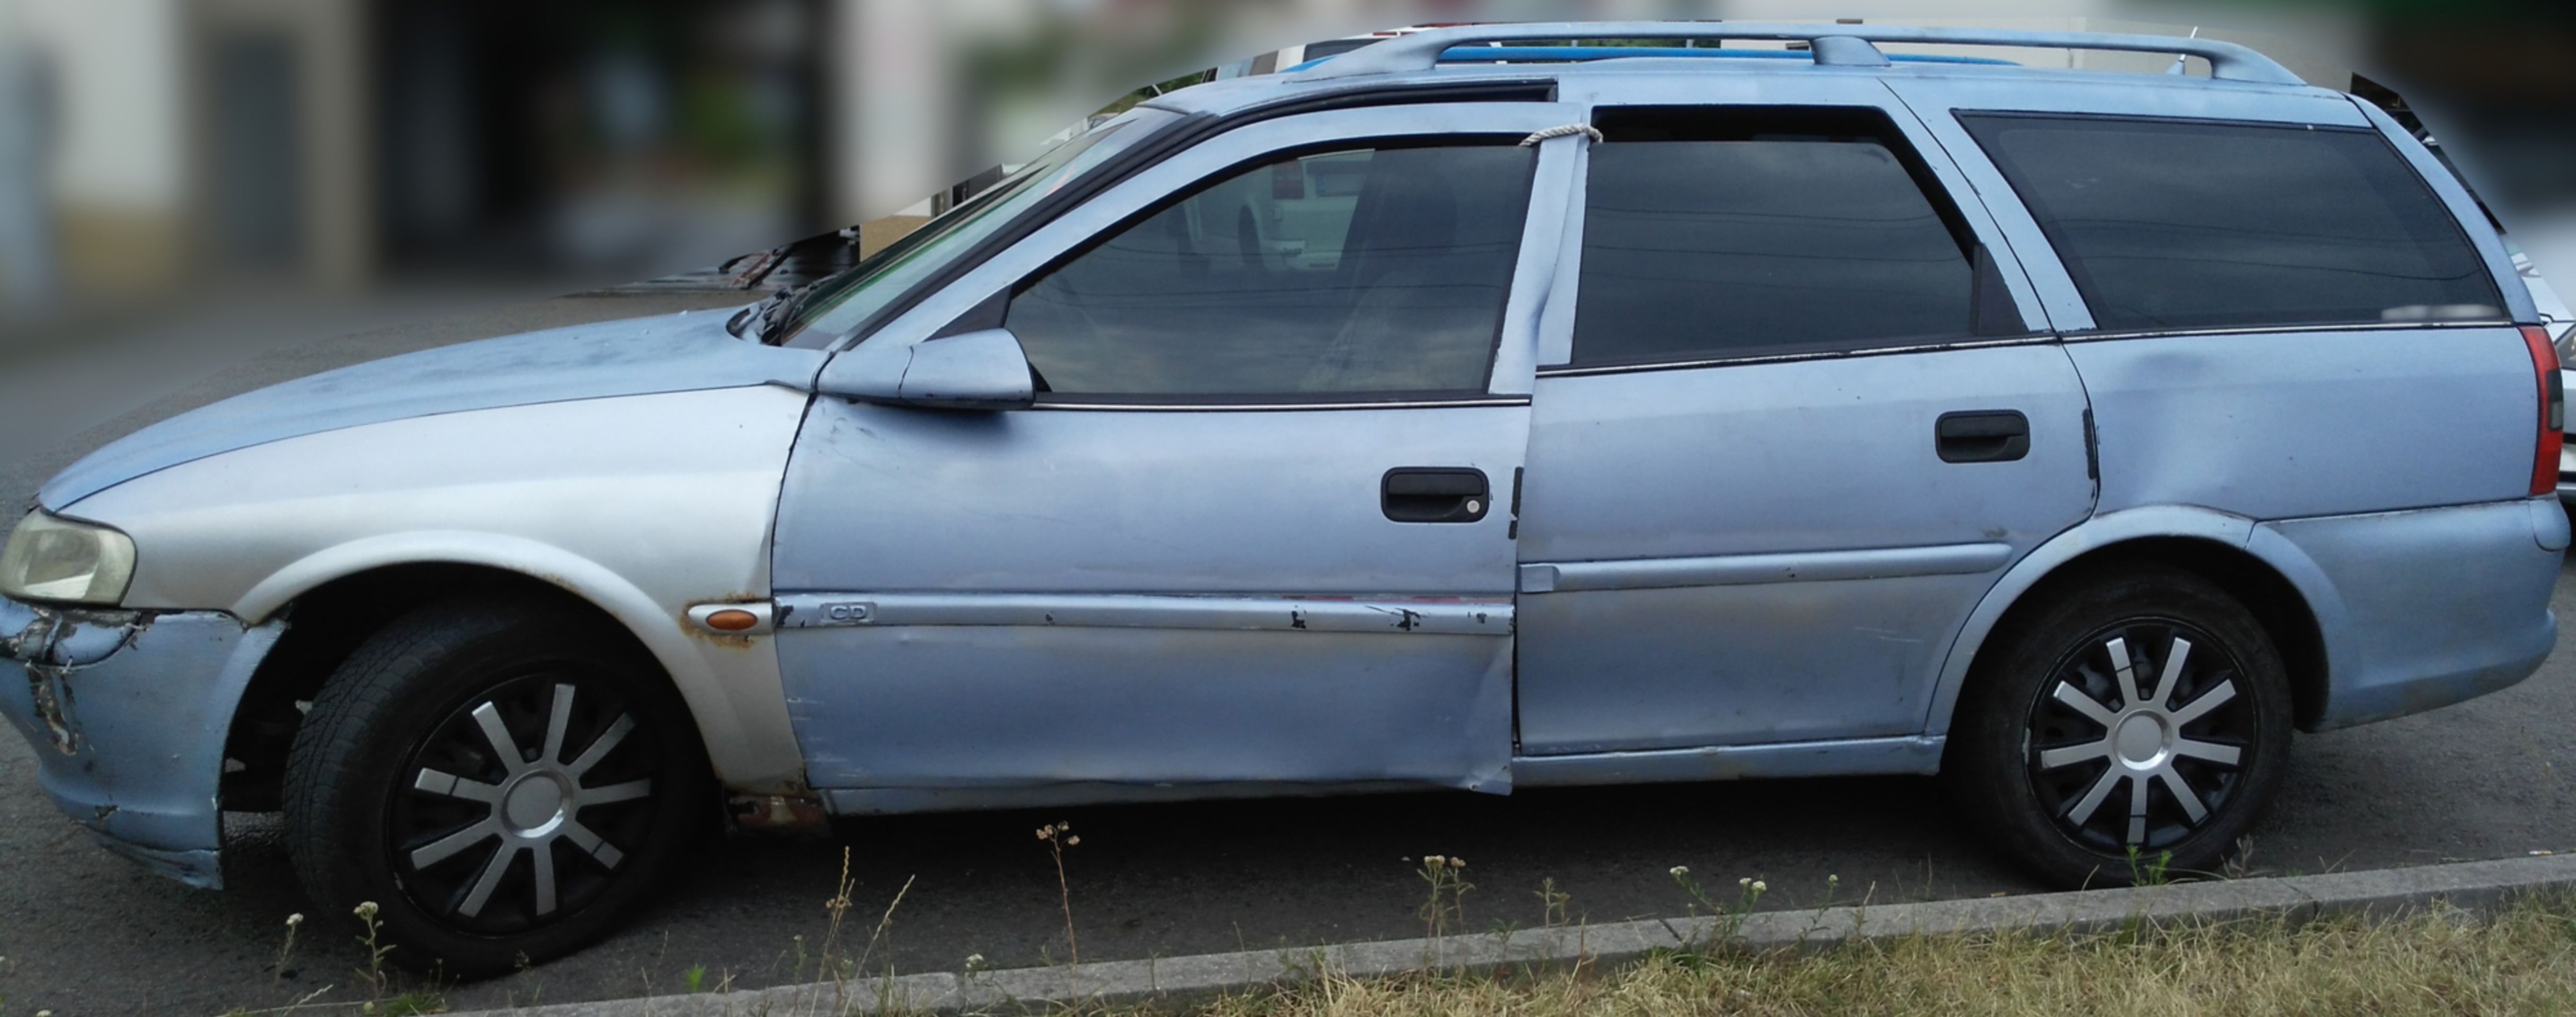 Auto ve velmi špatném technickém stavu v Ostravě-Porubě - 3 - GALERIE: Auto ve velmi špatném technickém stavu v Ostravě-Porubě (3/4)